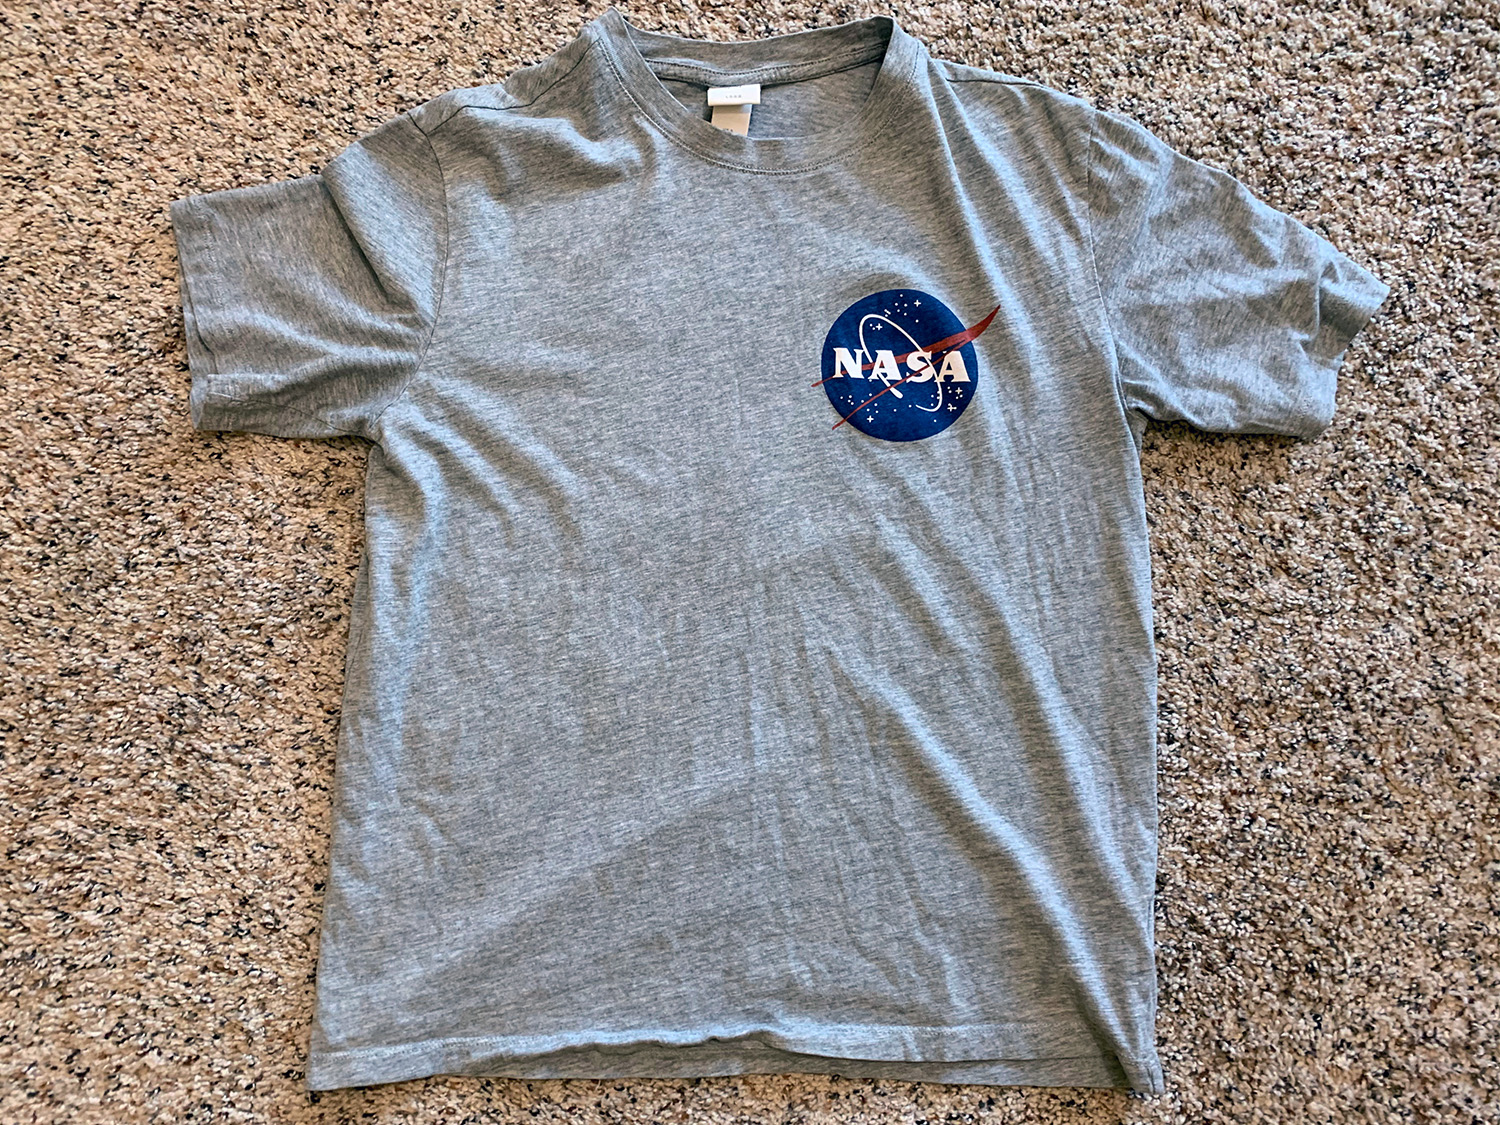 H&M Mens Grey NASA Logo T-Shirt Size S